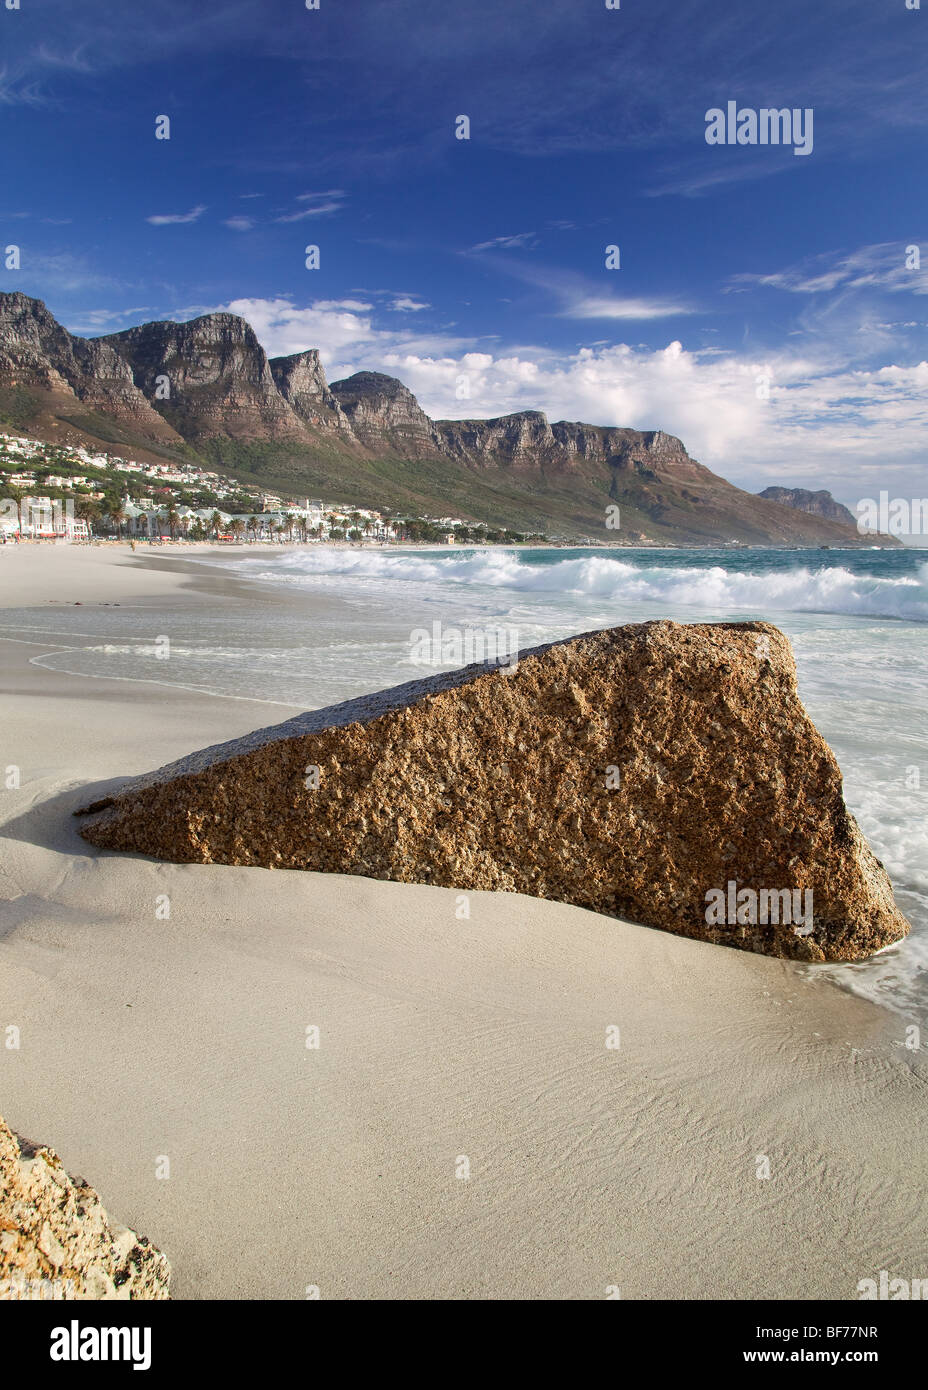 La plage de Camps Bay, Cape Town, Afrique du Sud Banque D'Images